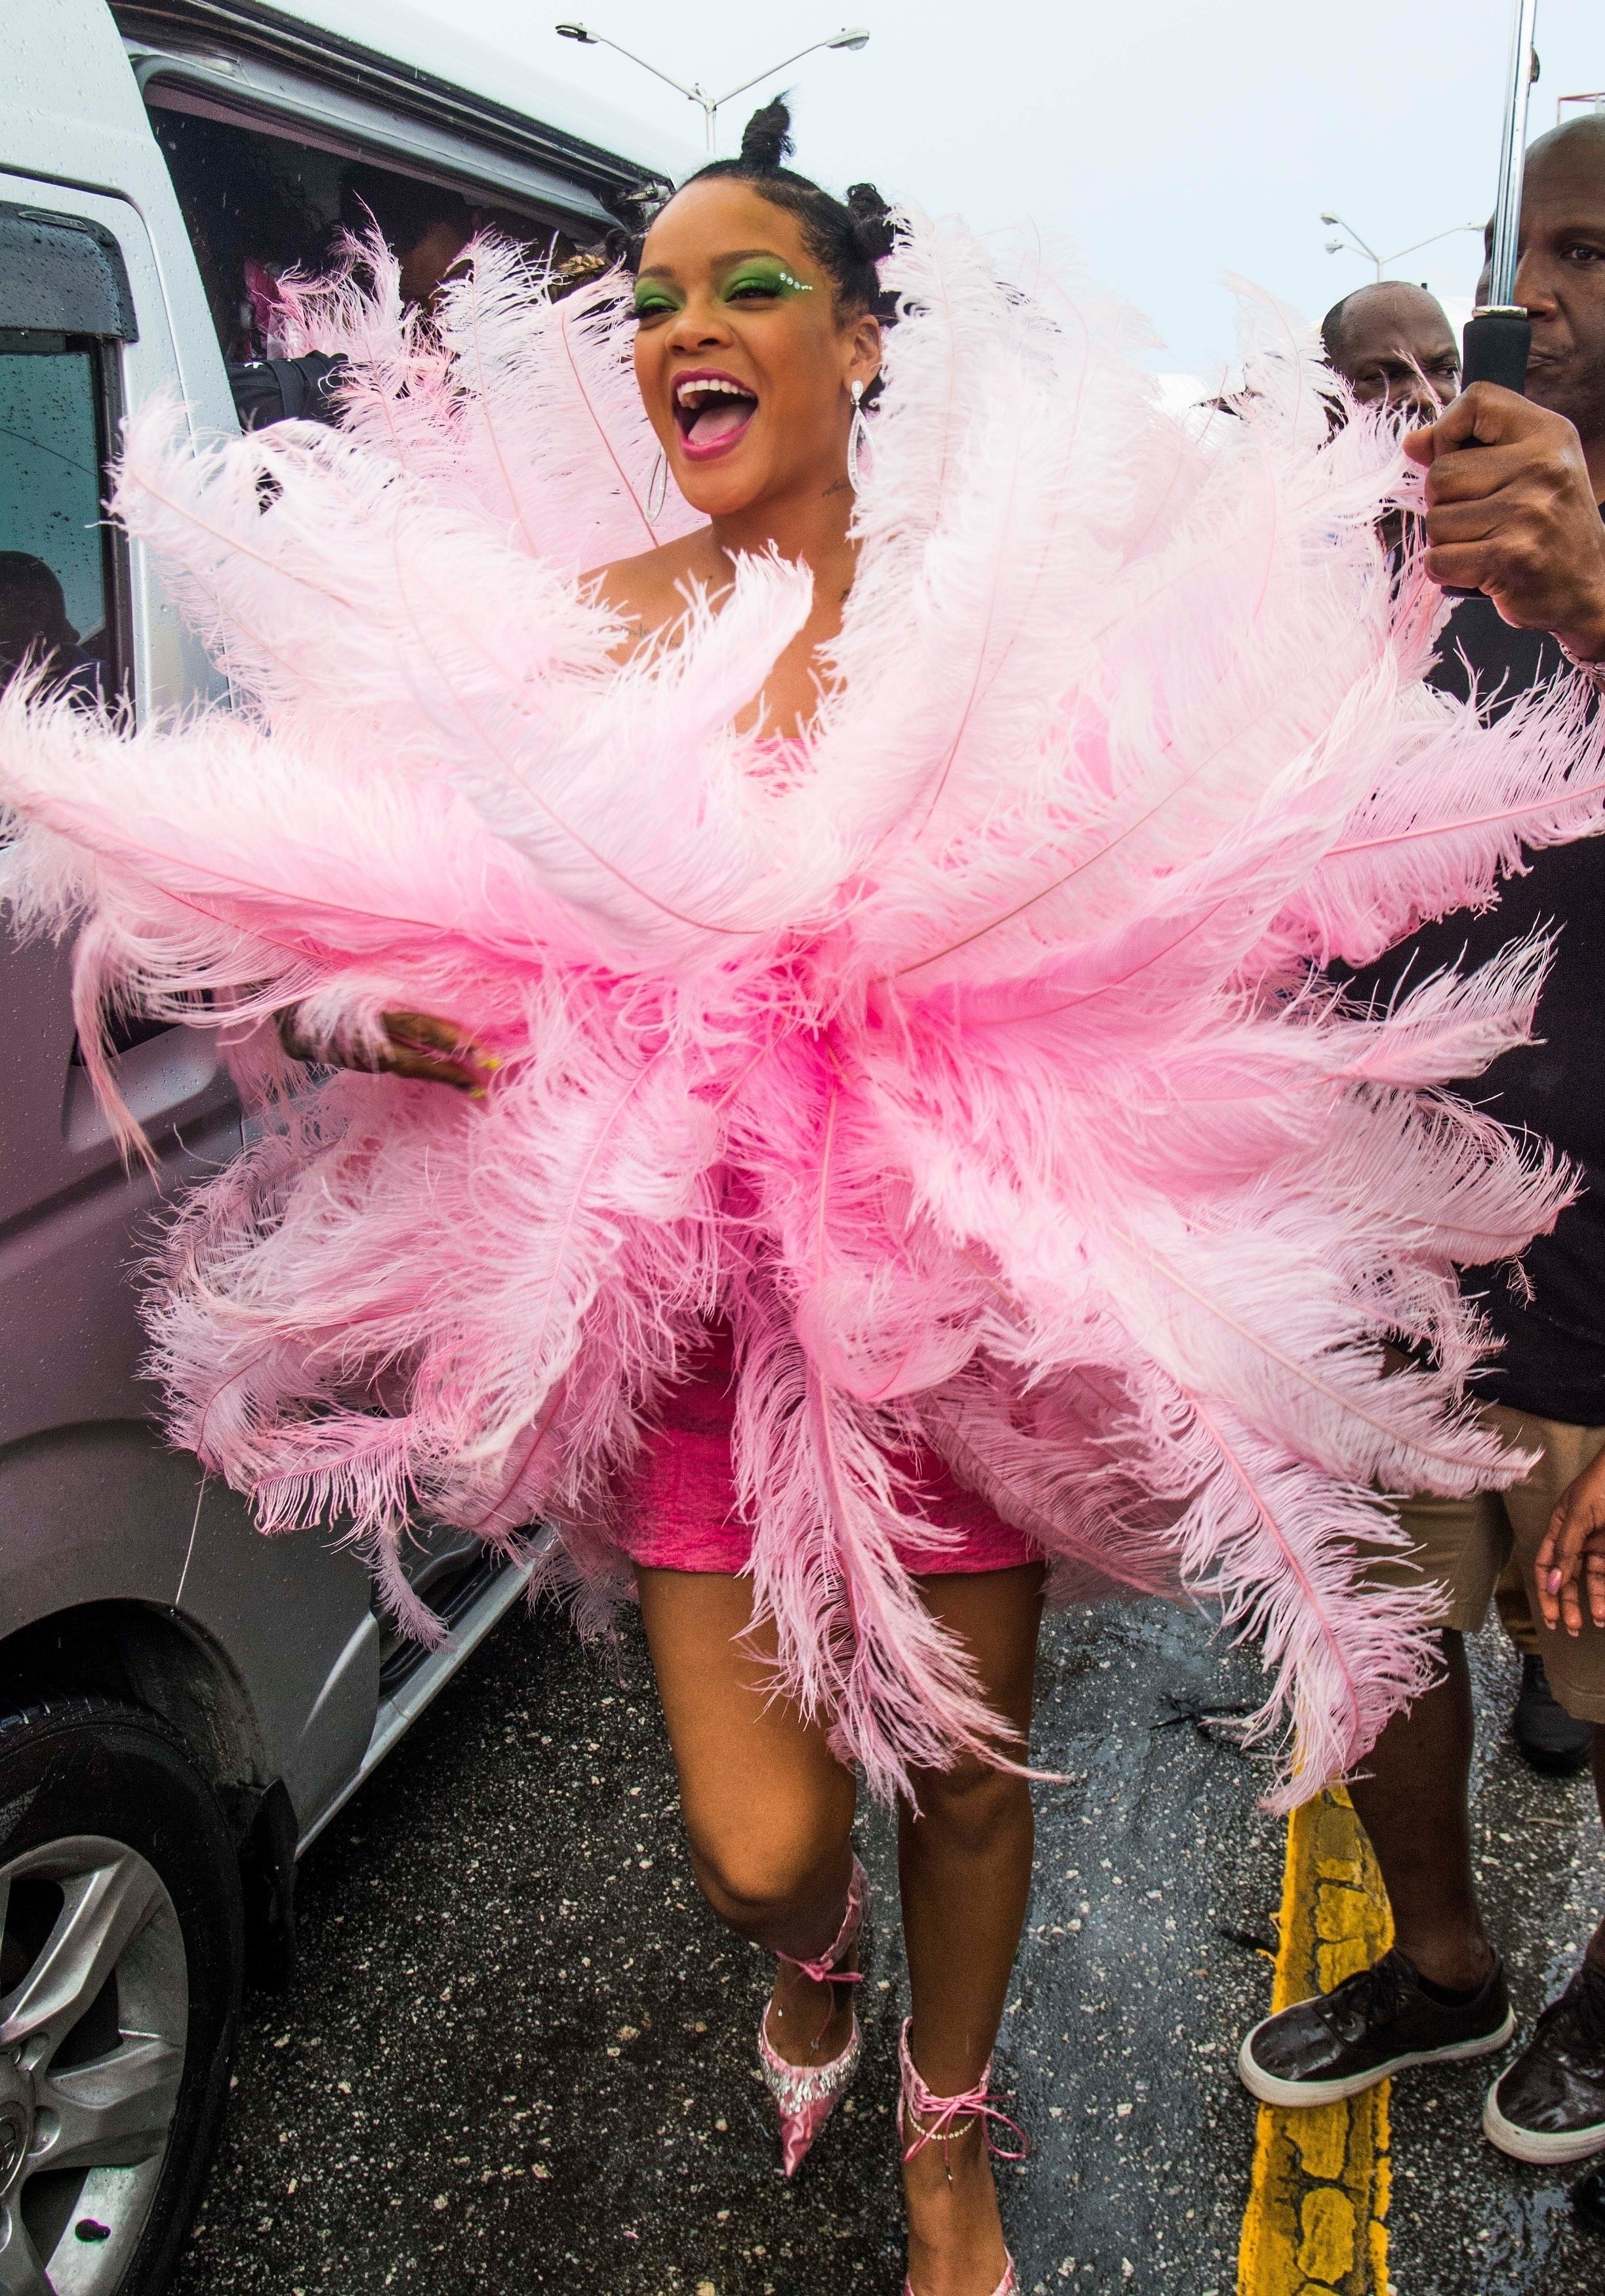 Rihanna no Crop Over Festival 2019 (Foto: Islandpaps.com / BACKGRID)